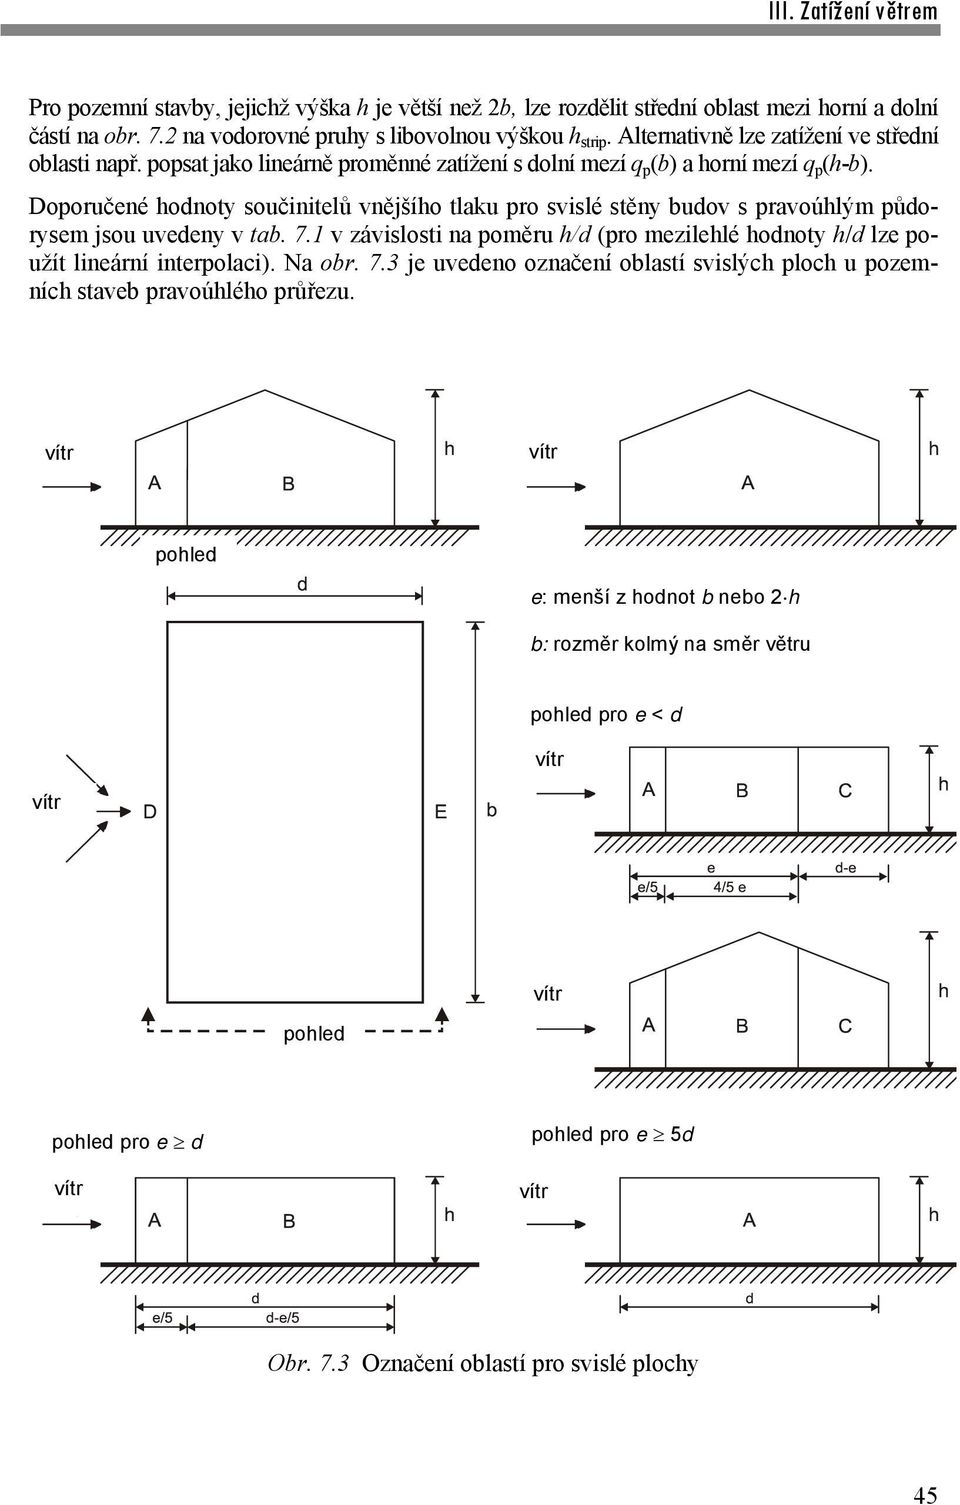 Doporučené hodnoty součinitelů vnějšího tlaku pro svislé stěny budov s pravoúhlým půdorysem jsou uvedeny v tab. 7.